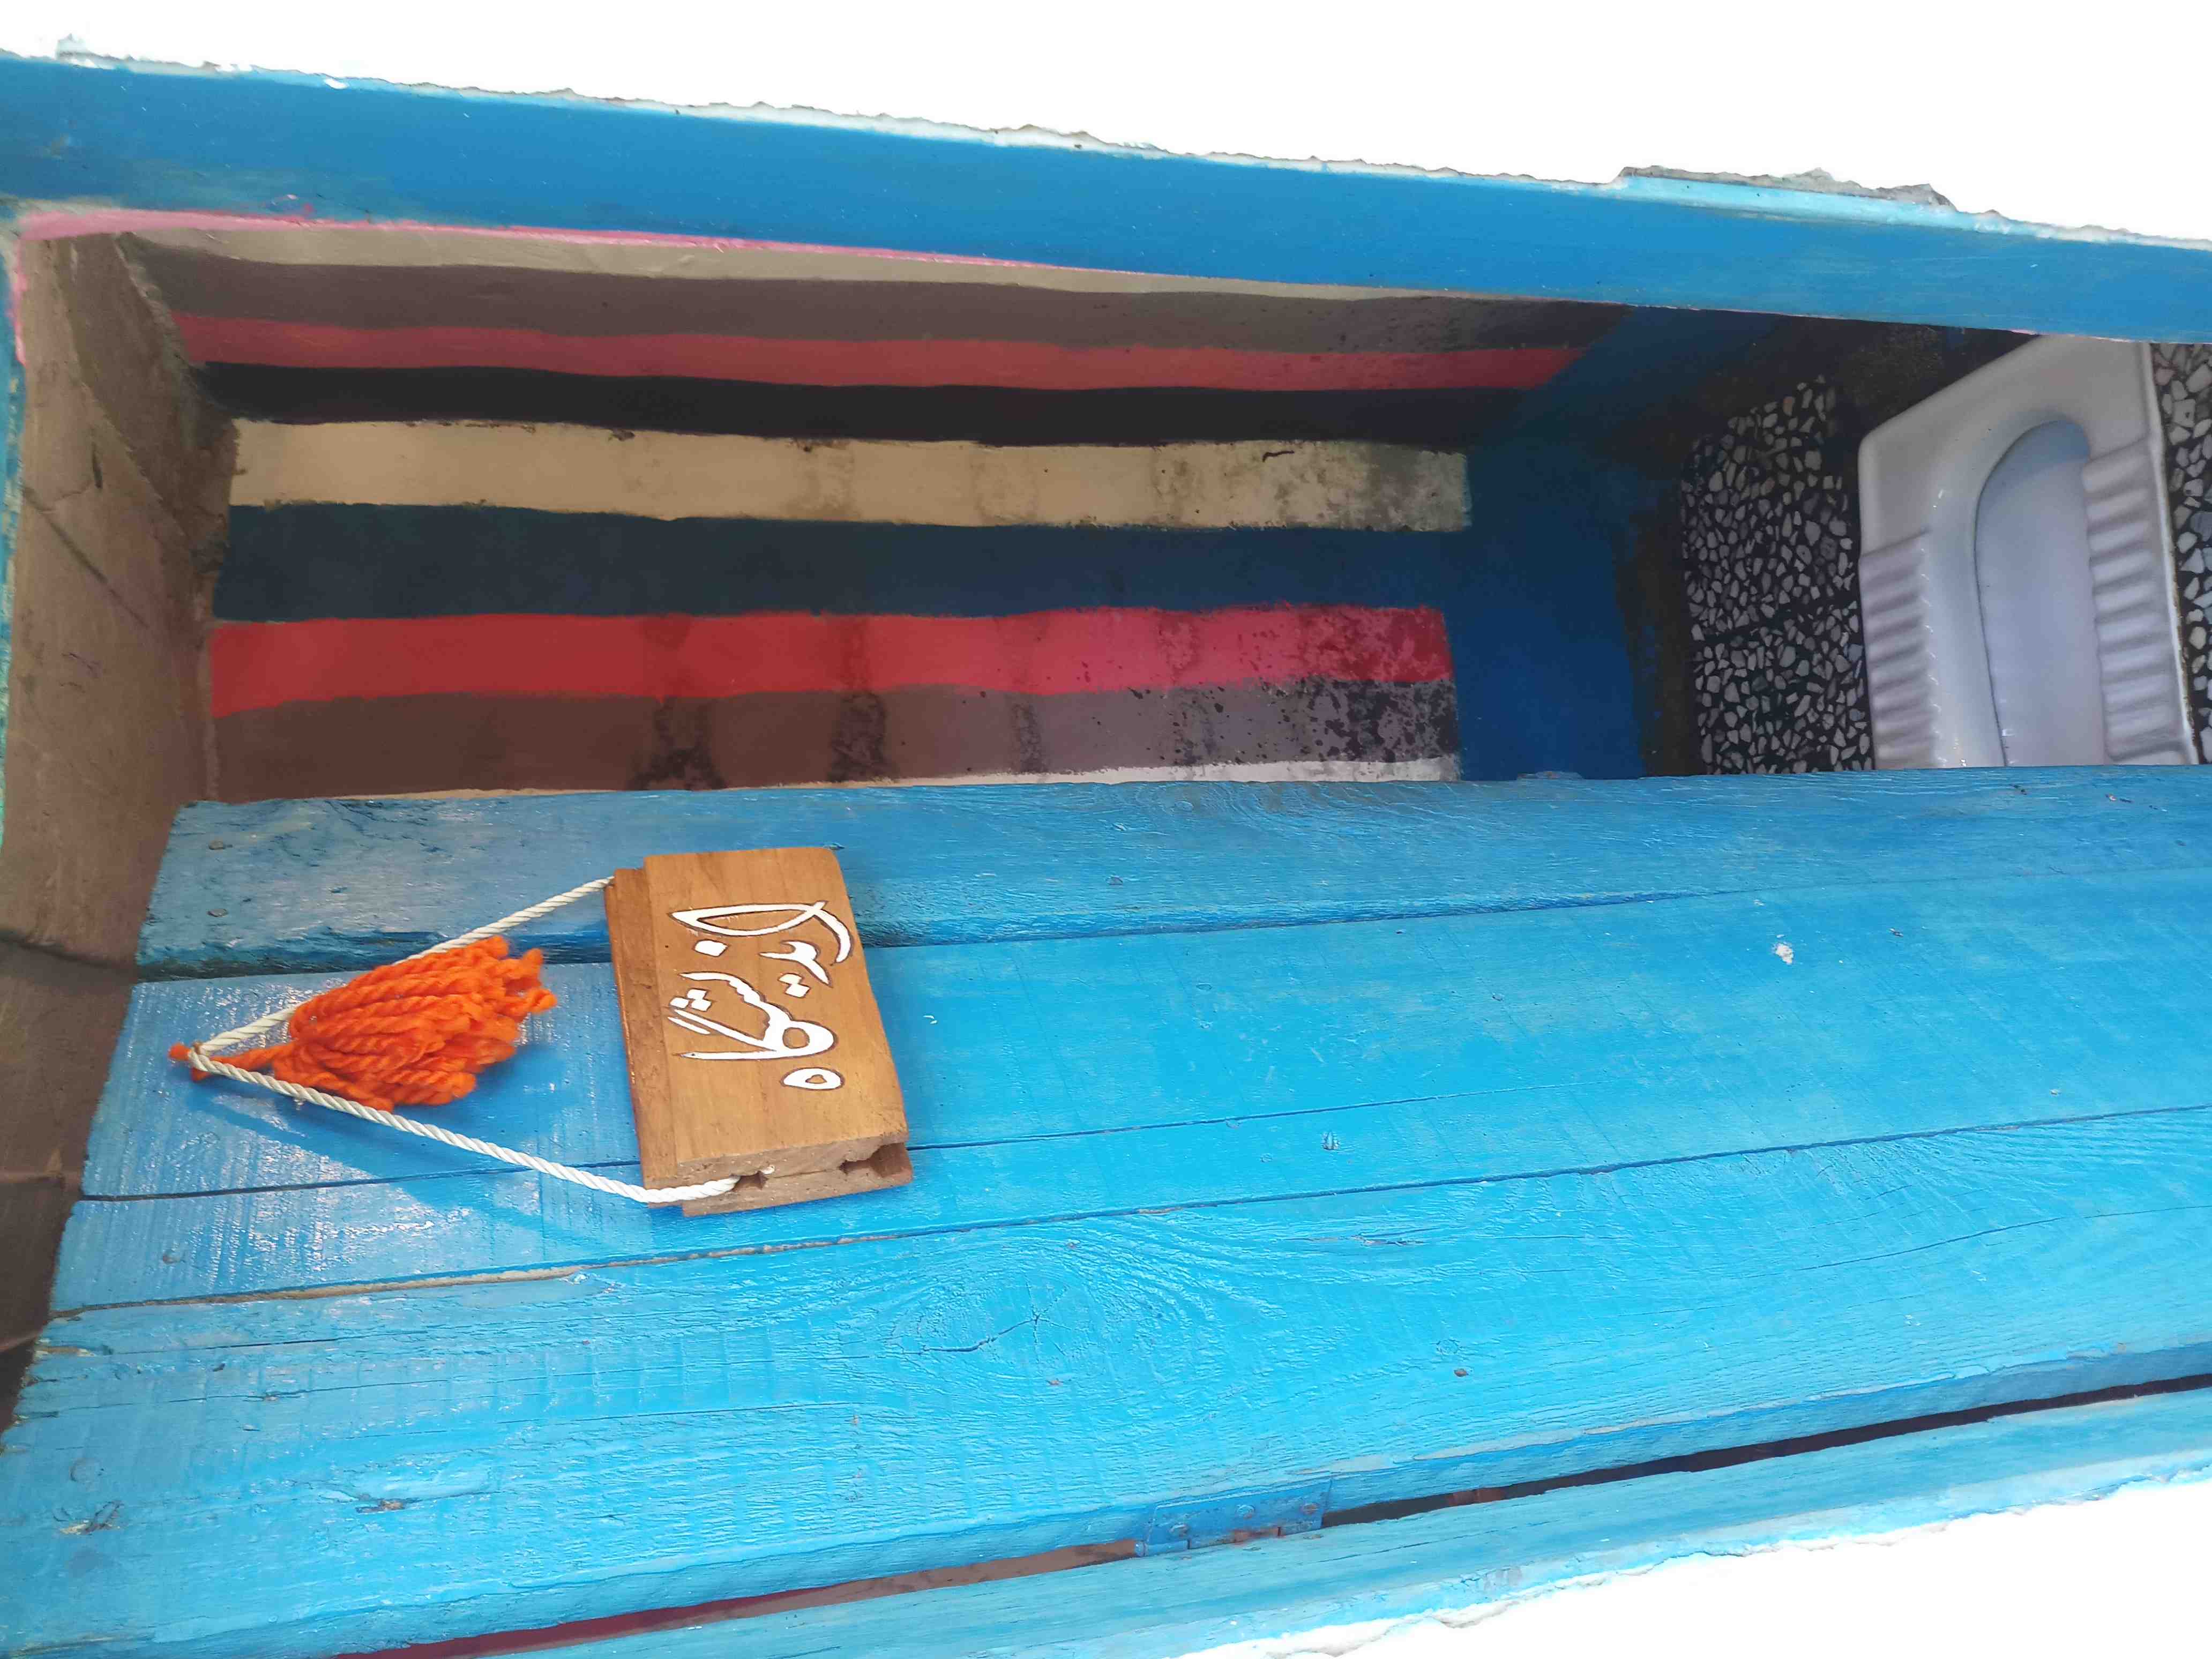 بومگردی اجاره اتاق سنتی در سواد کوه - اتاق 2